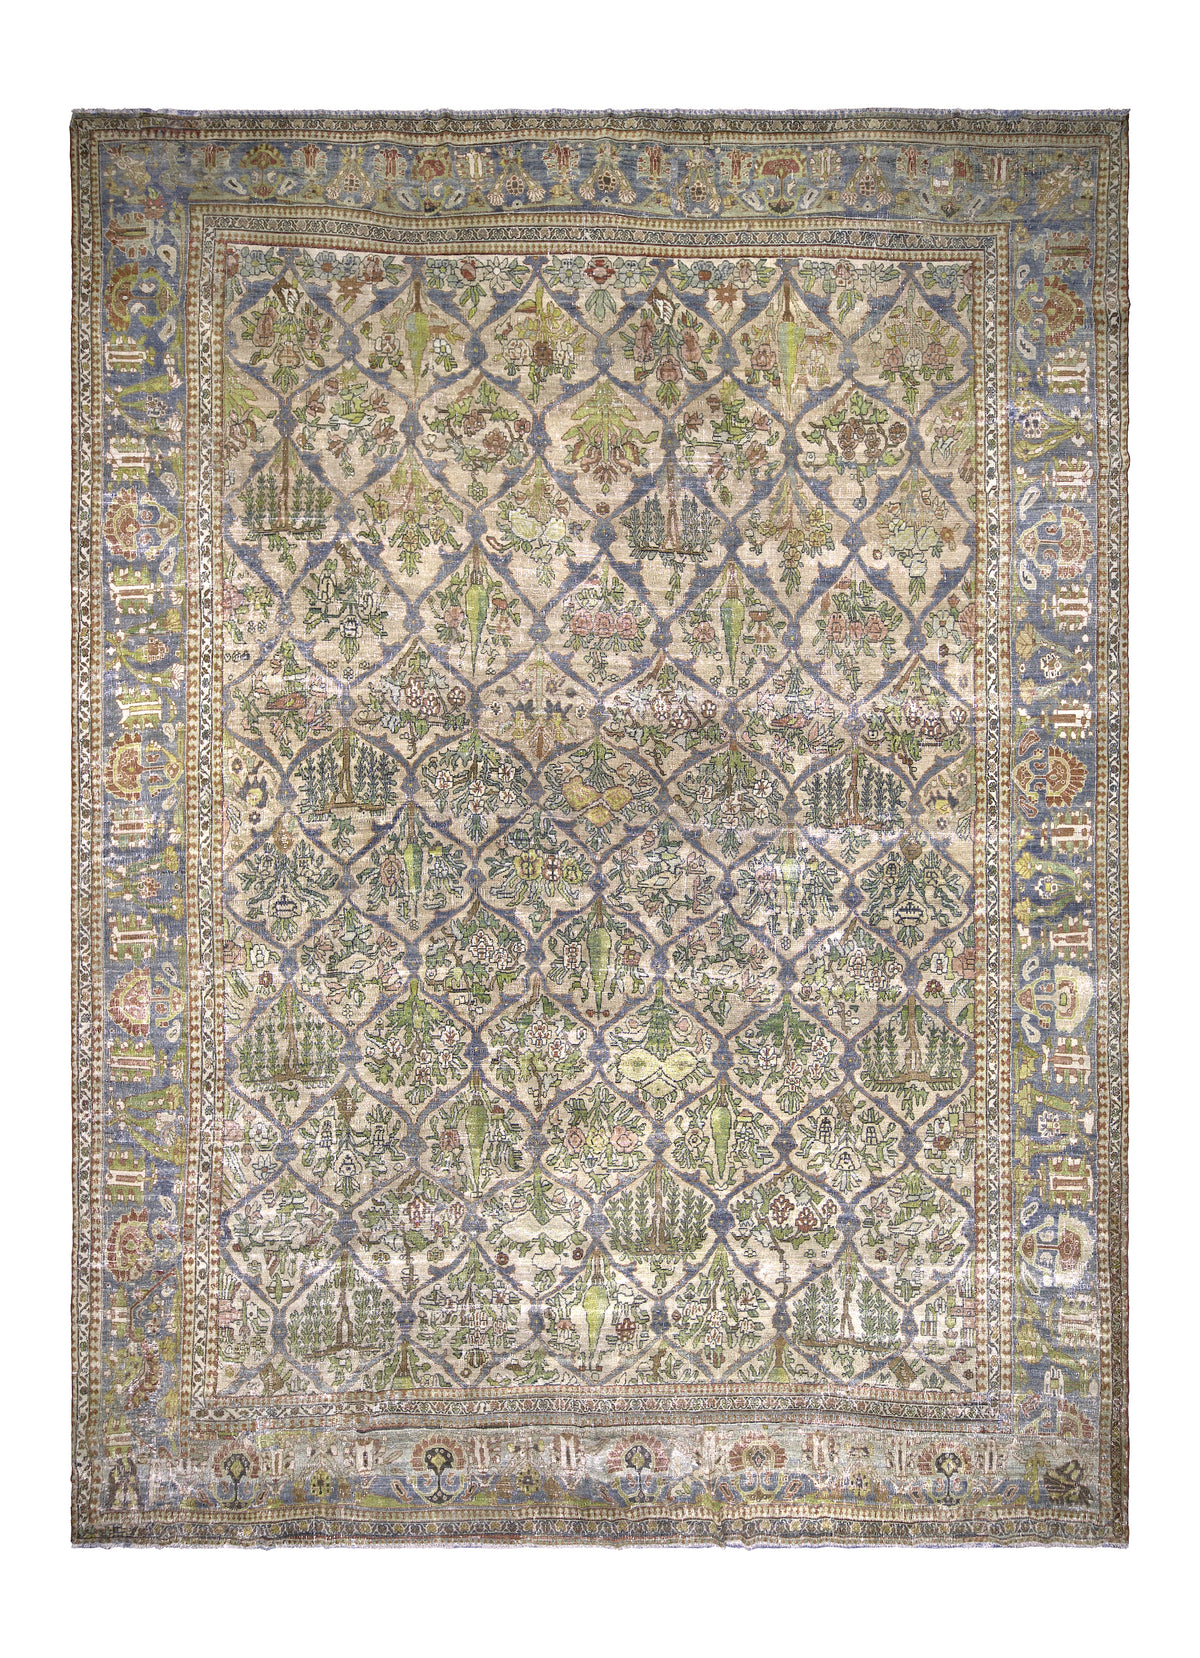 Allida - Vintage Persian Area Rug